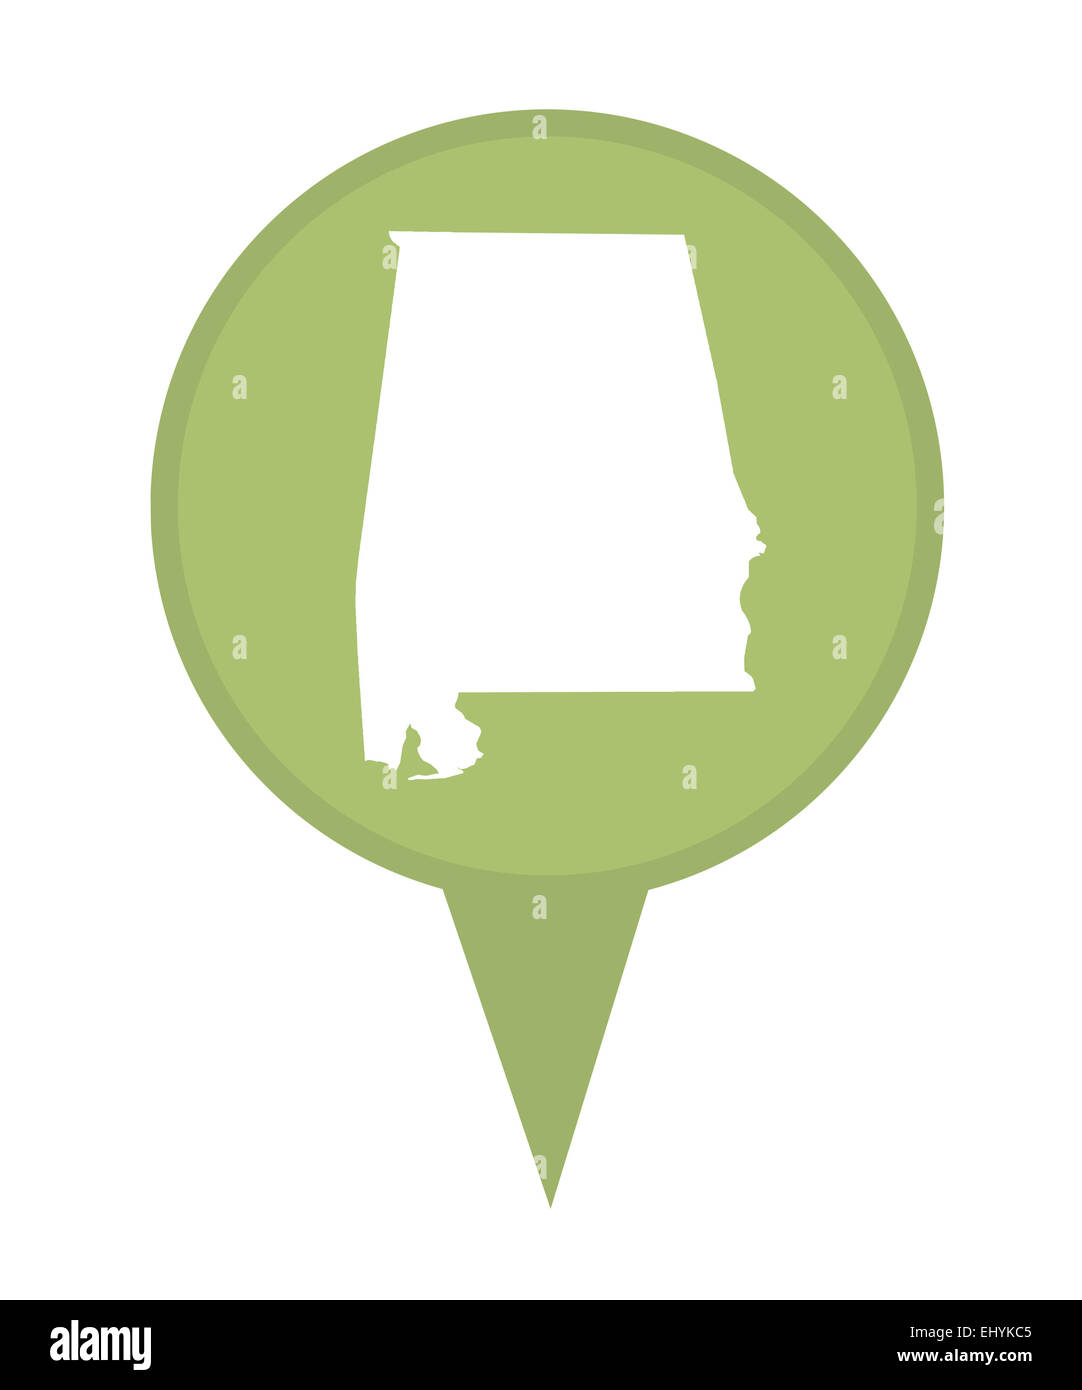 Amerikanischen Bundesstaat Alabama Stecknadel isoliert auf einem weißen Hintergrund. Stockfoto